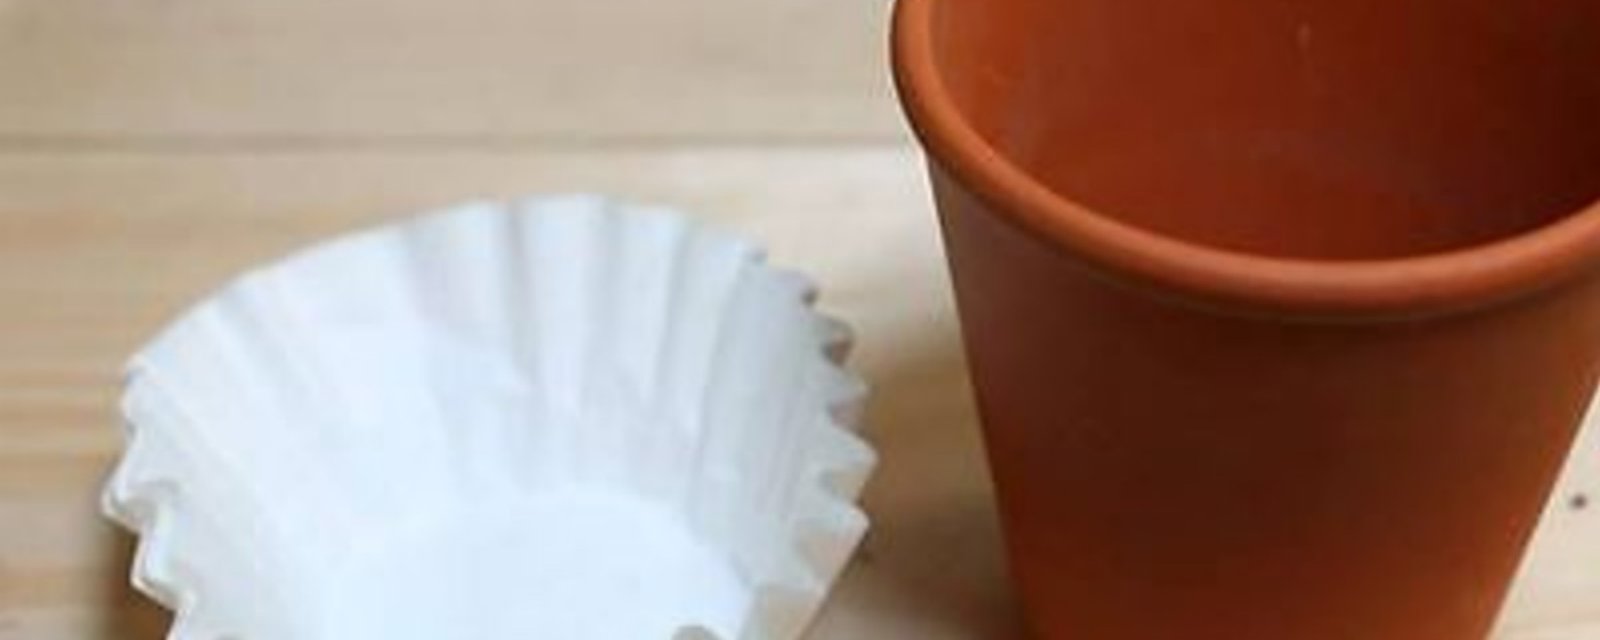 Quand vous planterez vos fleurs en pot, n’oubliez pas d’utiliser des filtres à café!